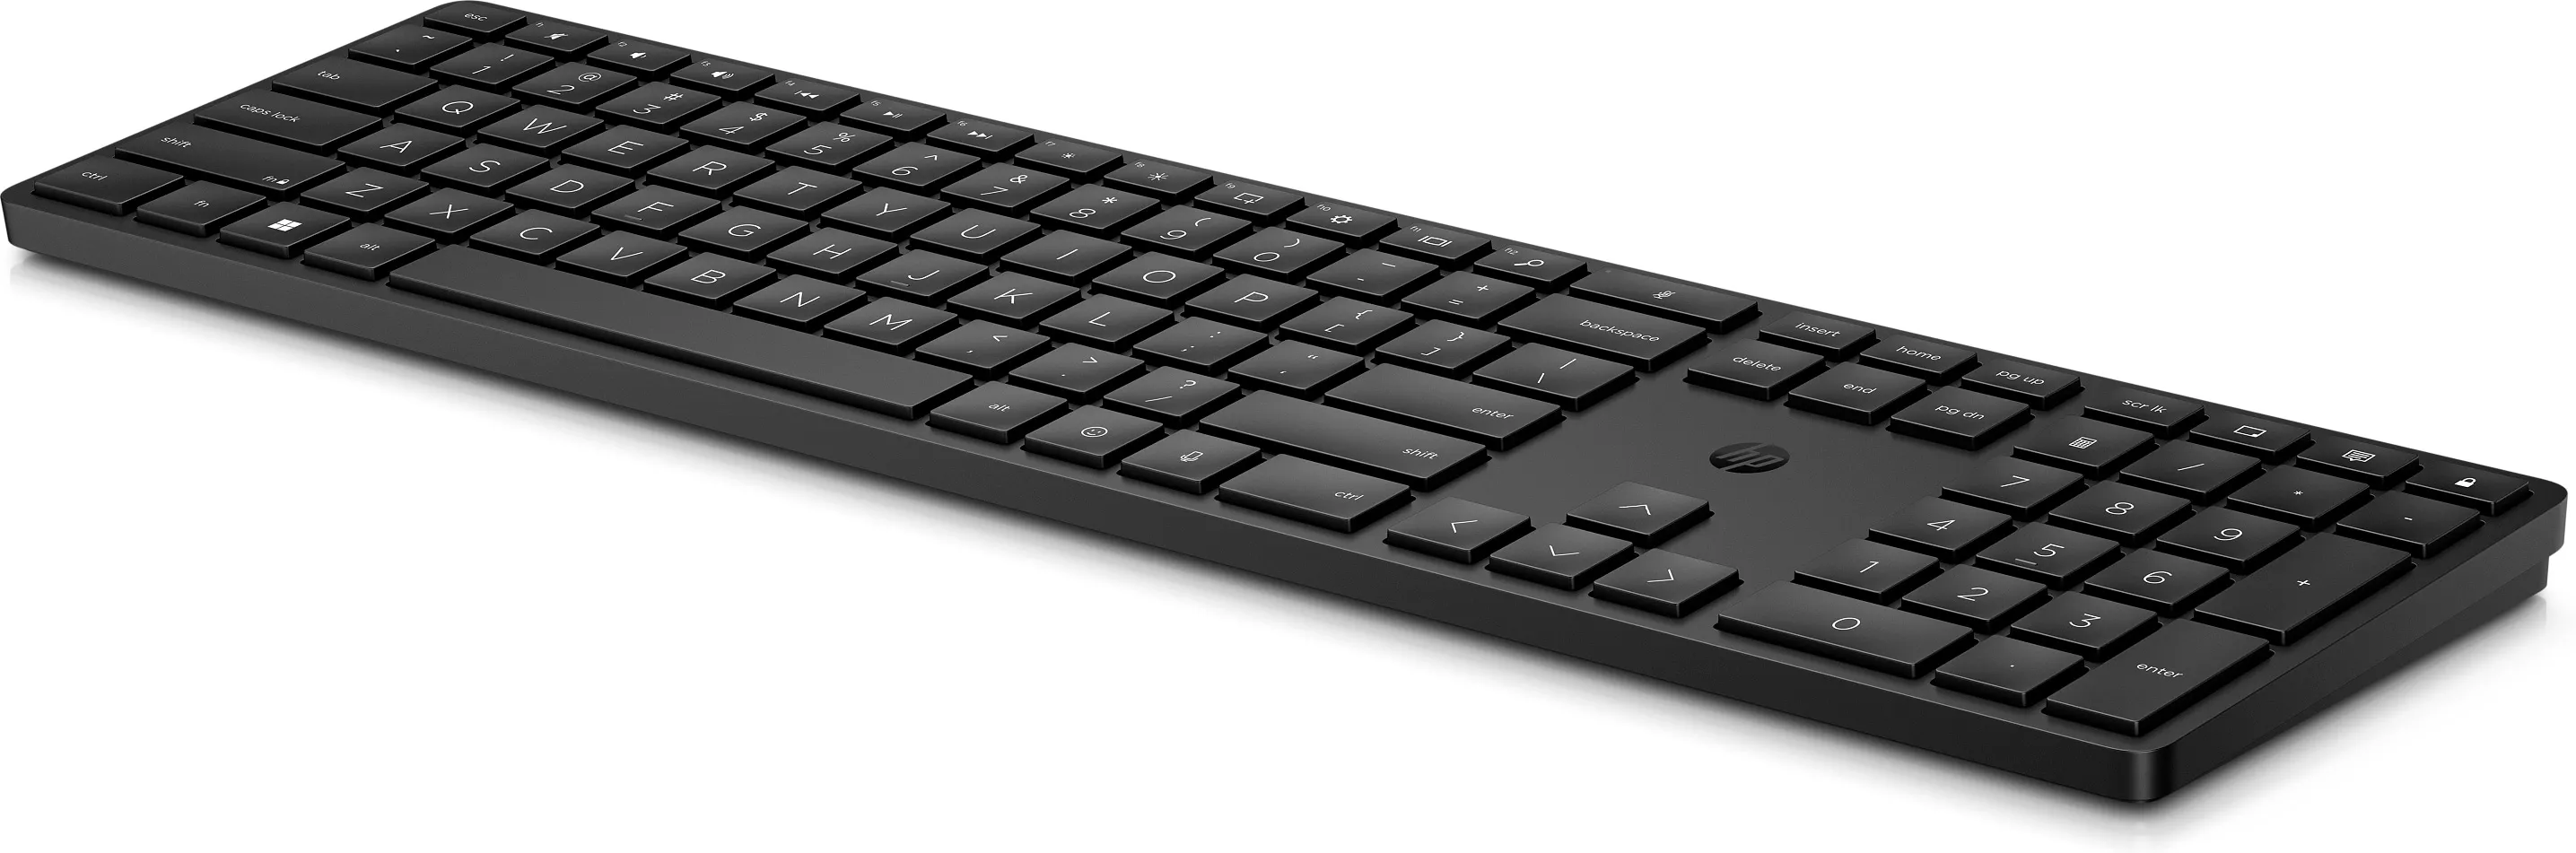 Vente HP 450 BLK Programmable Wireless Keyboard HP au meilleur prix - visuel 2